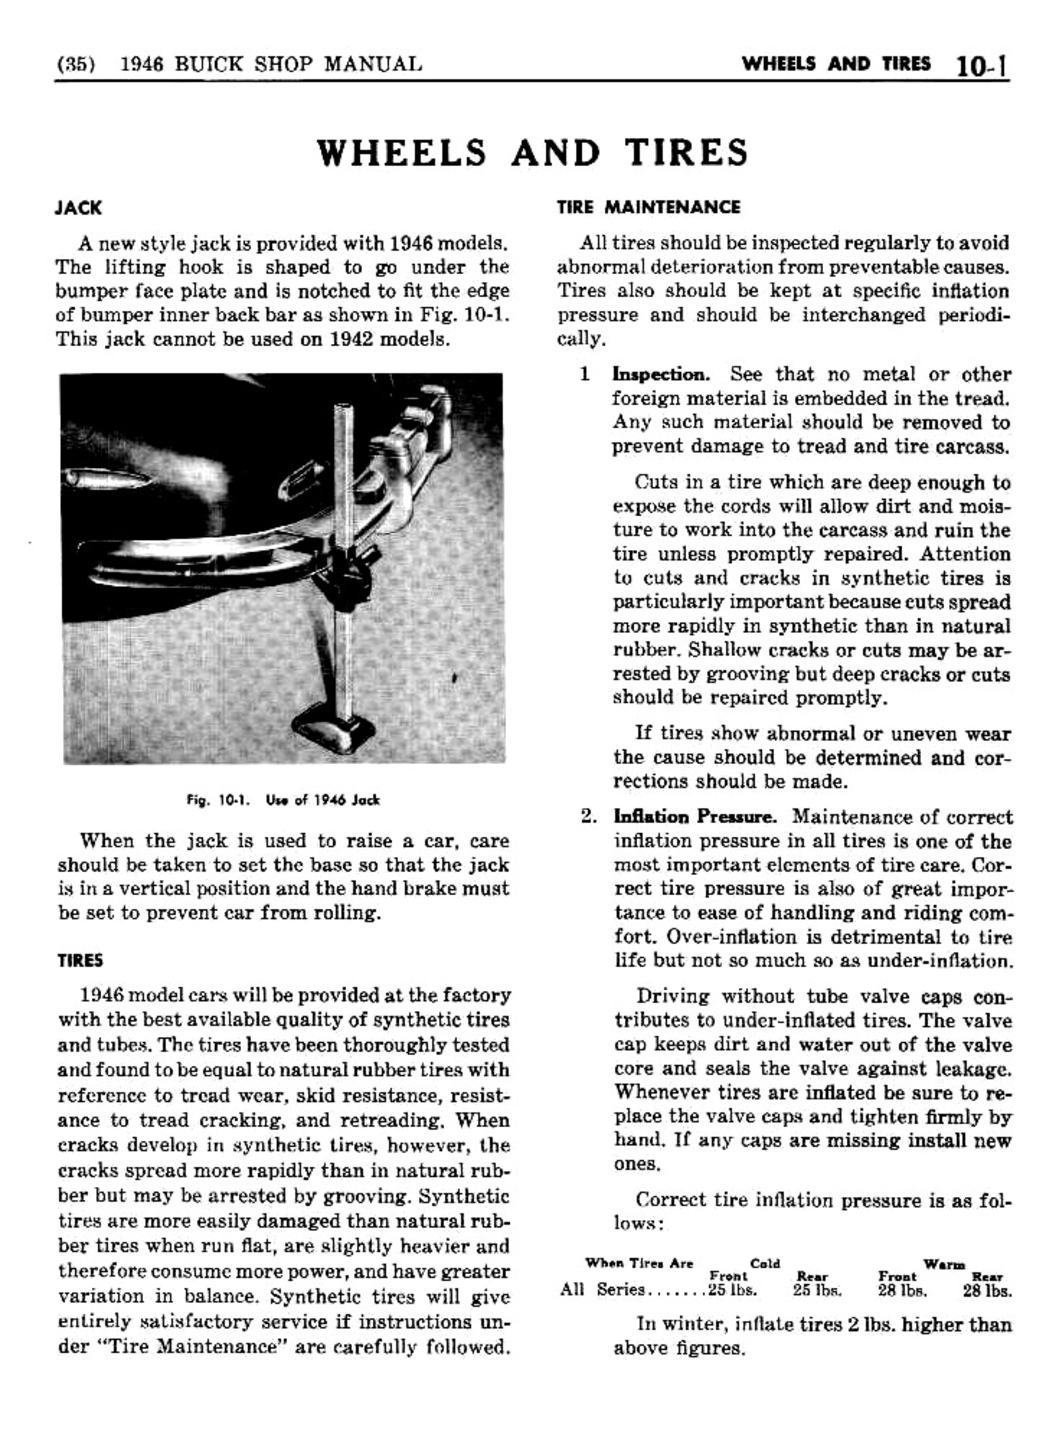 n_10 1946 Buick Shop Manual - Wheels & Tires-001-001.jpg